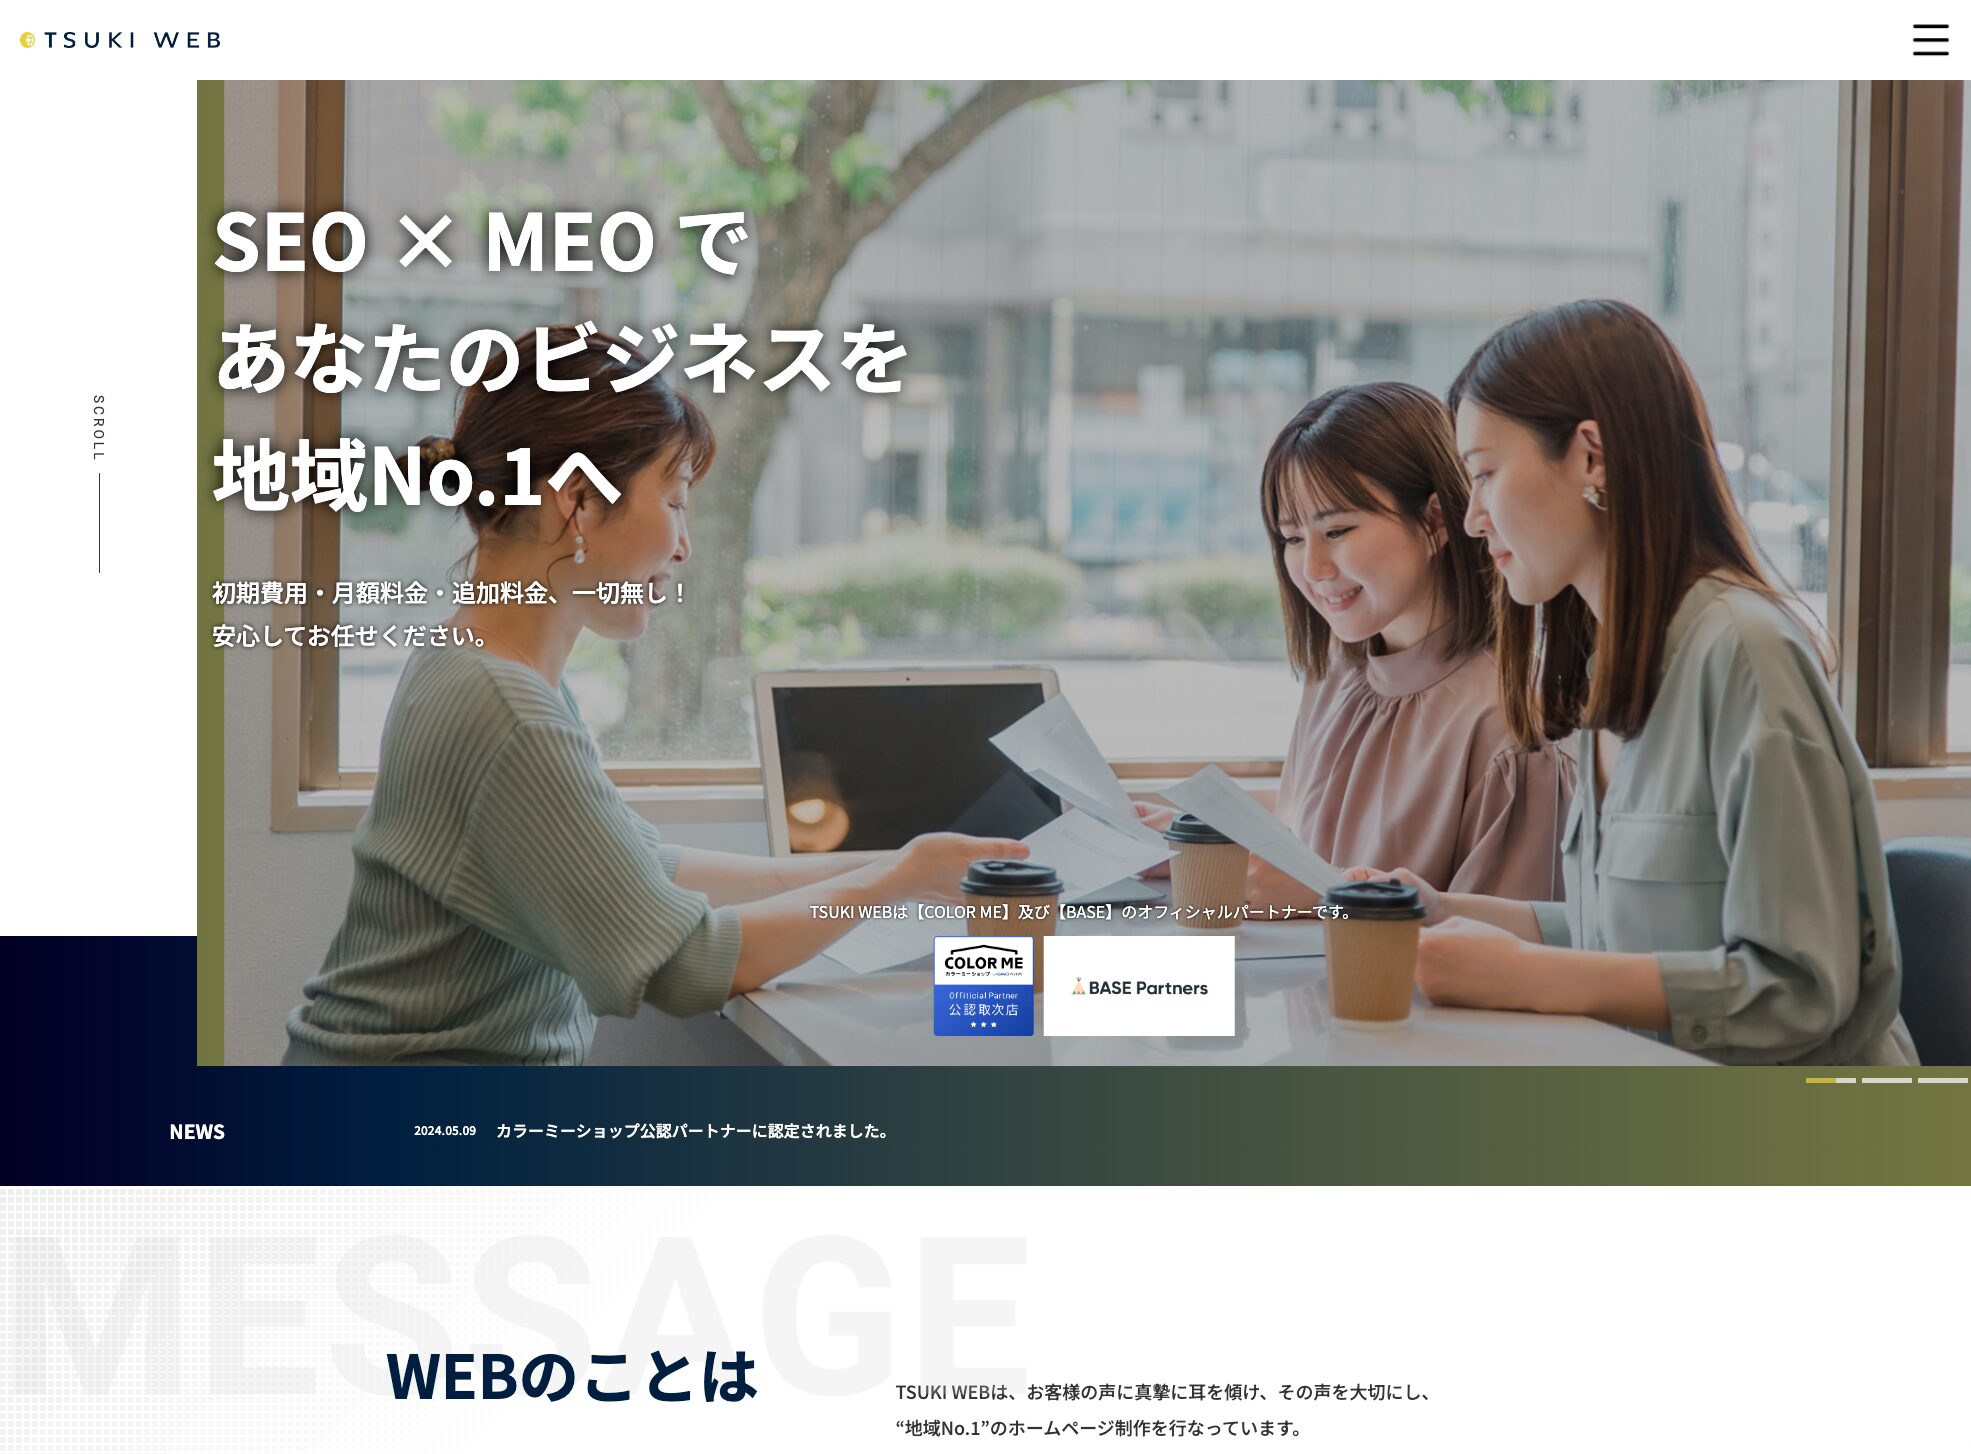 TSUKI WEB株式会社